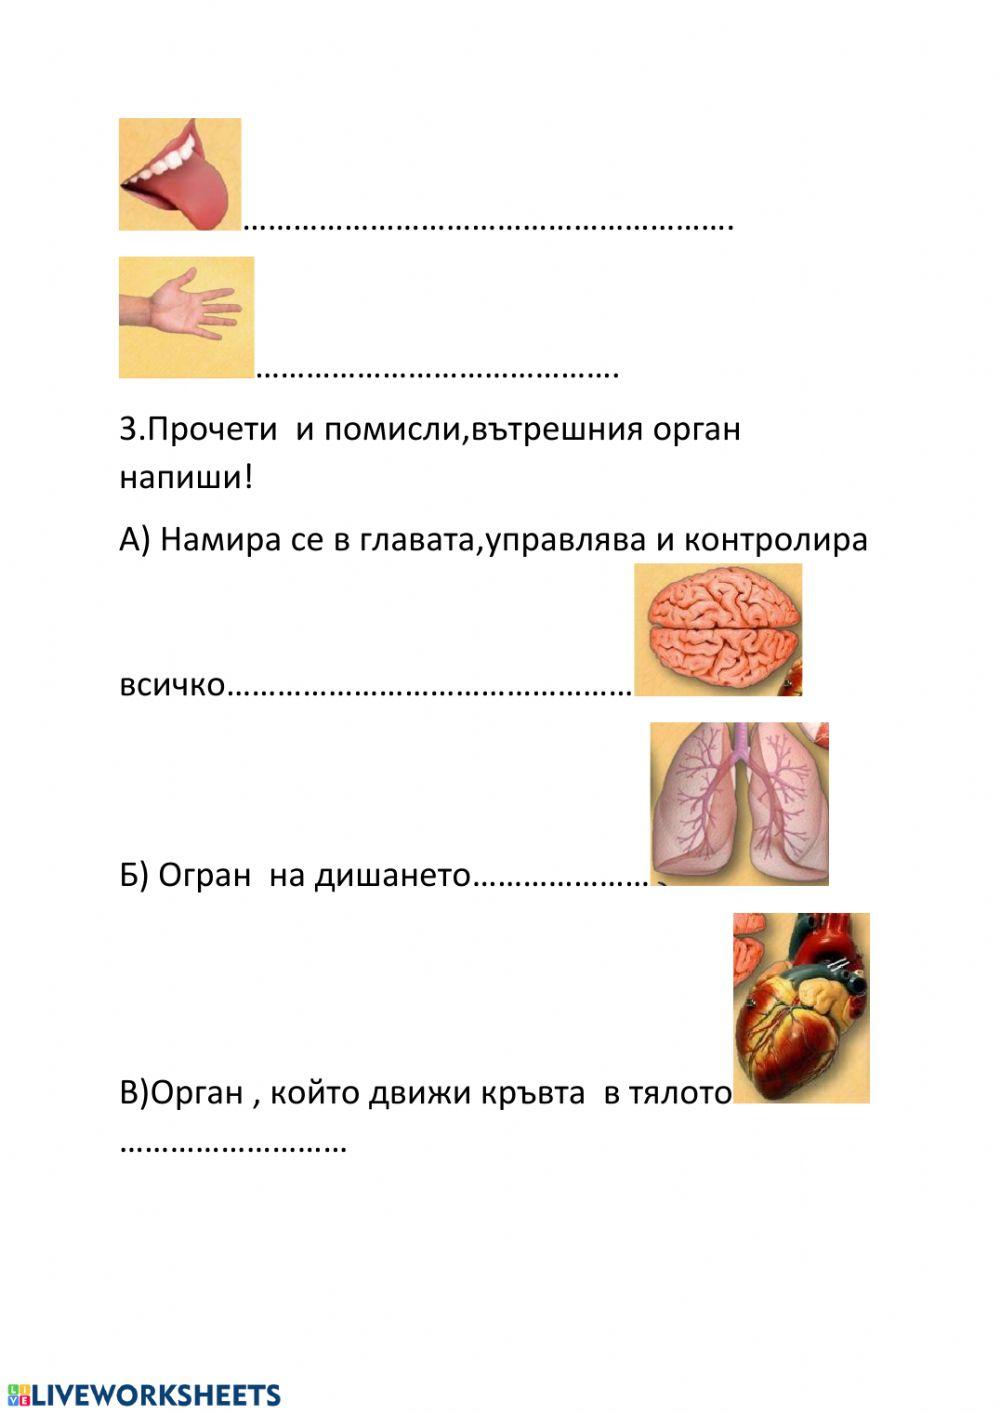 Органи на човешко тяло